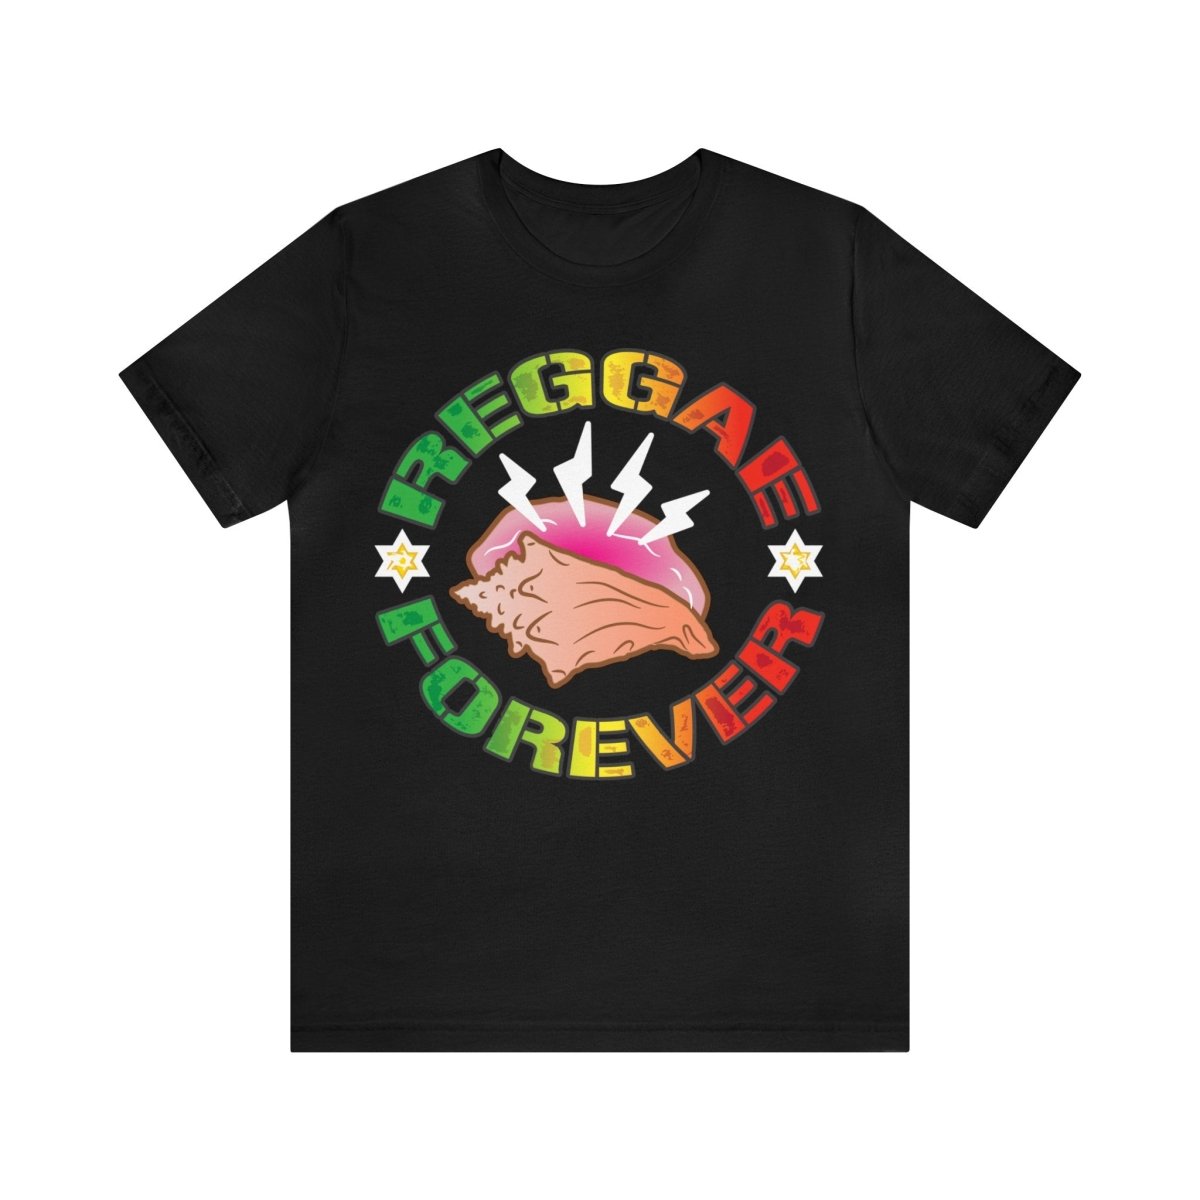 Reggae Forever Premium T-Shirt, Seashell, Ocean Sounds, Caribbean, Relax, Good Vibes